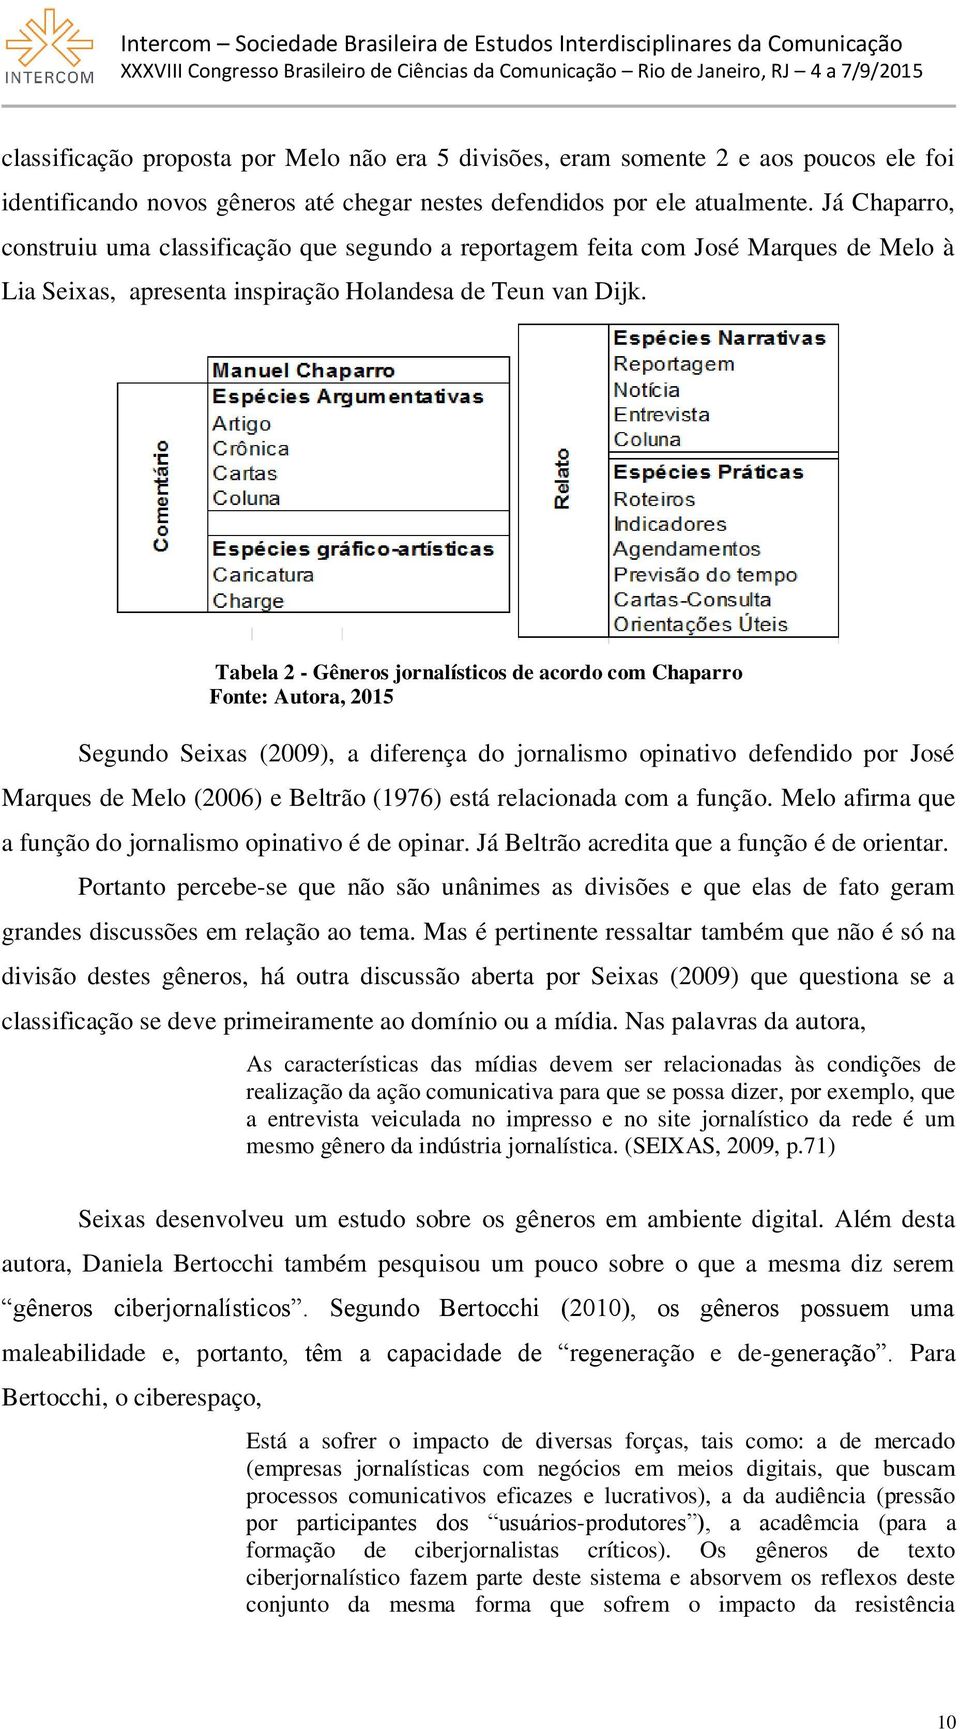 Tabela 2 - Gêneros jornalísticos de acordo com Chaparro Fonte: Autora, 2015 Segundo Seixas (2009), a diferença do jornalismo opinativo defendido por José Marques de Melo (2006) e Beltrão (1976) está